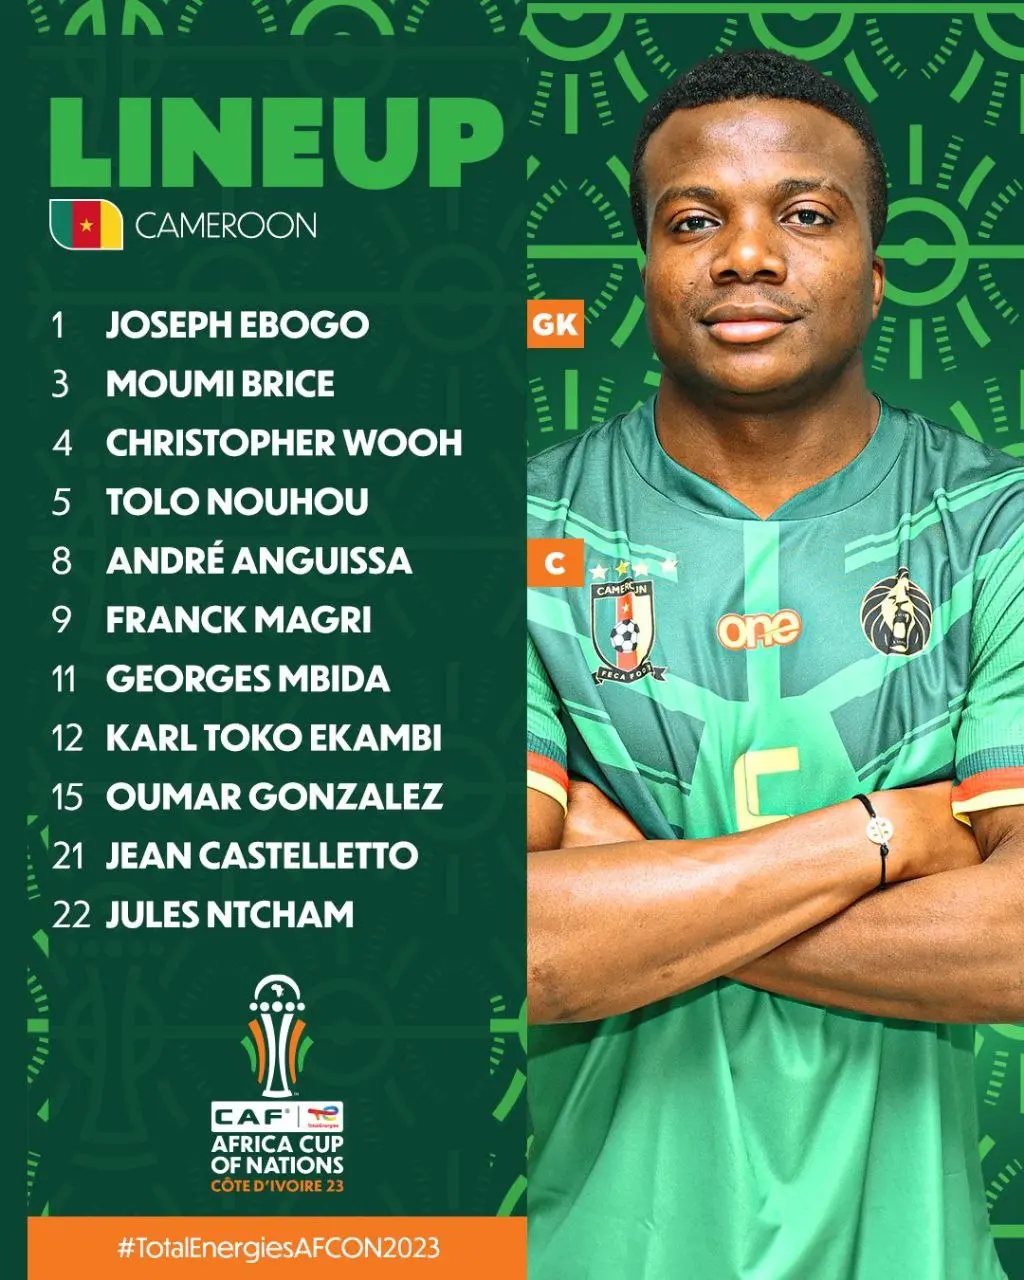 ترکیب تیم های ملی نیجریه و کامرون مشخص شد